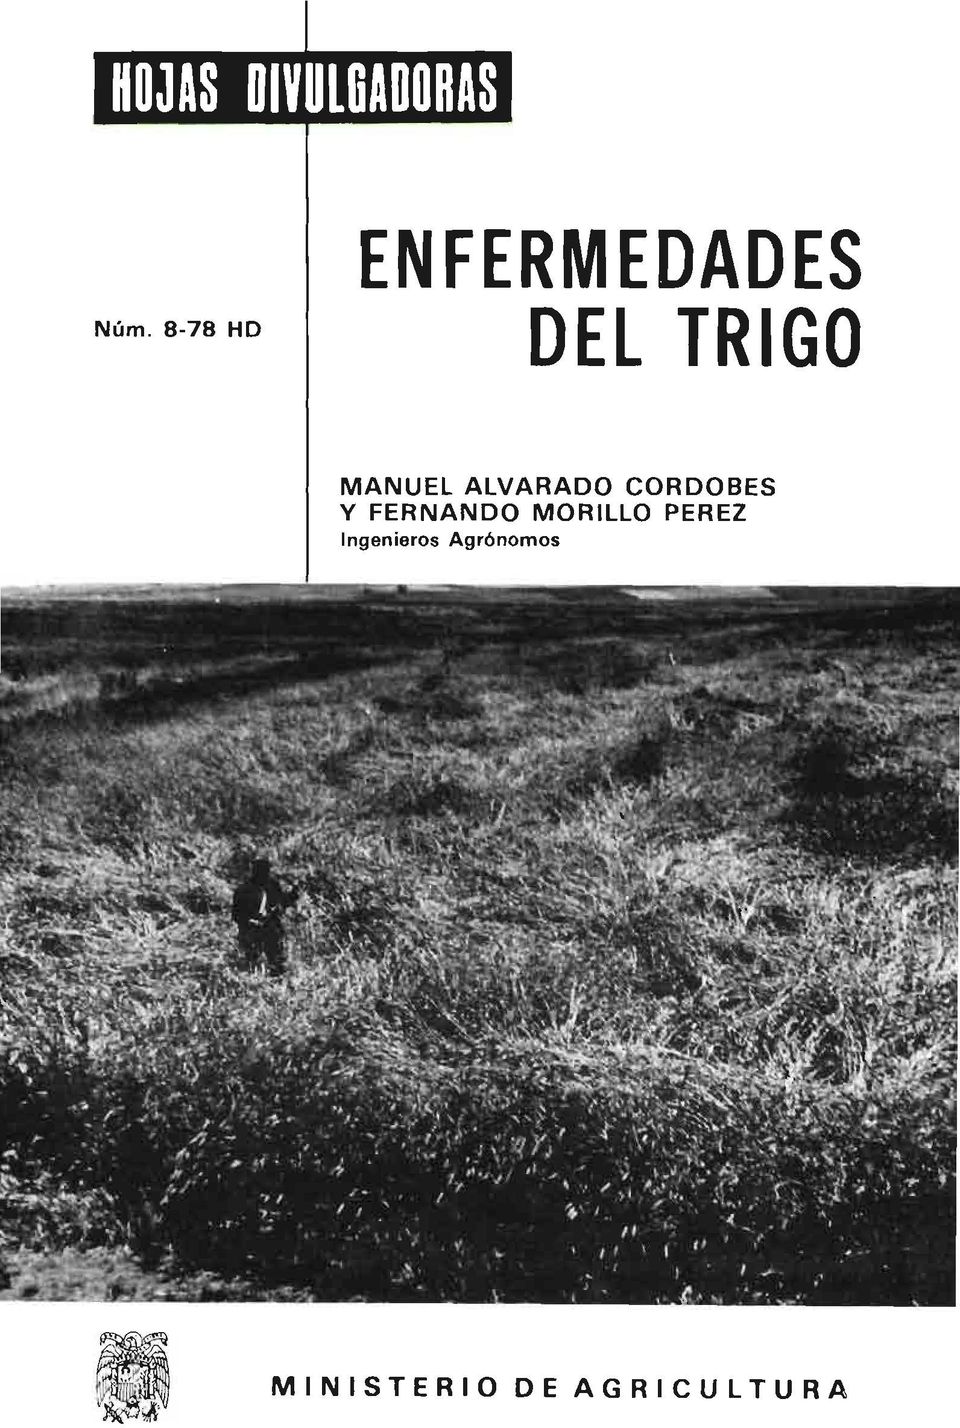 MANUEL ALVARADO CORDOBES Y FERNANDO